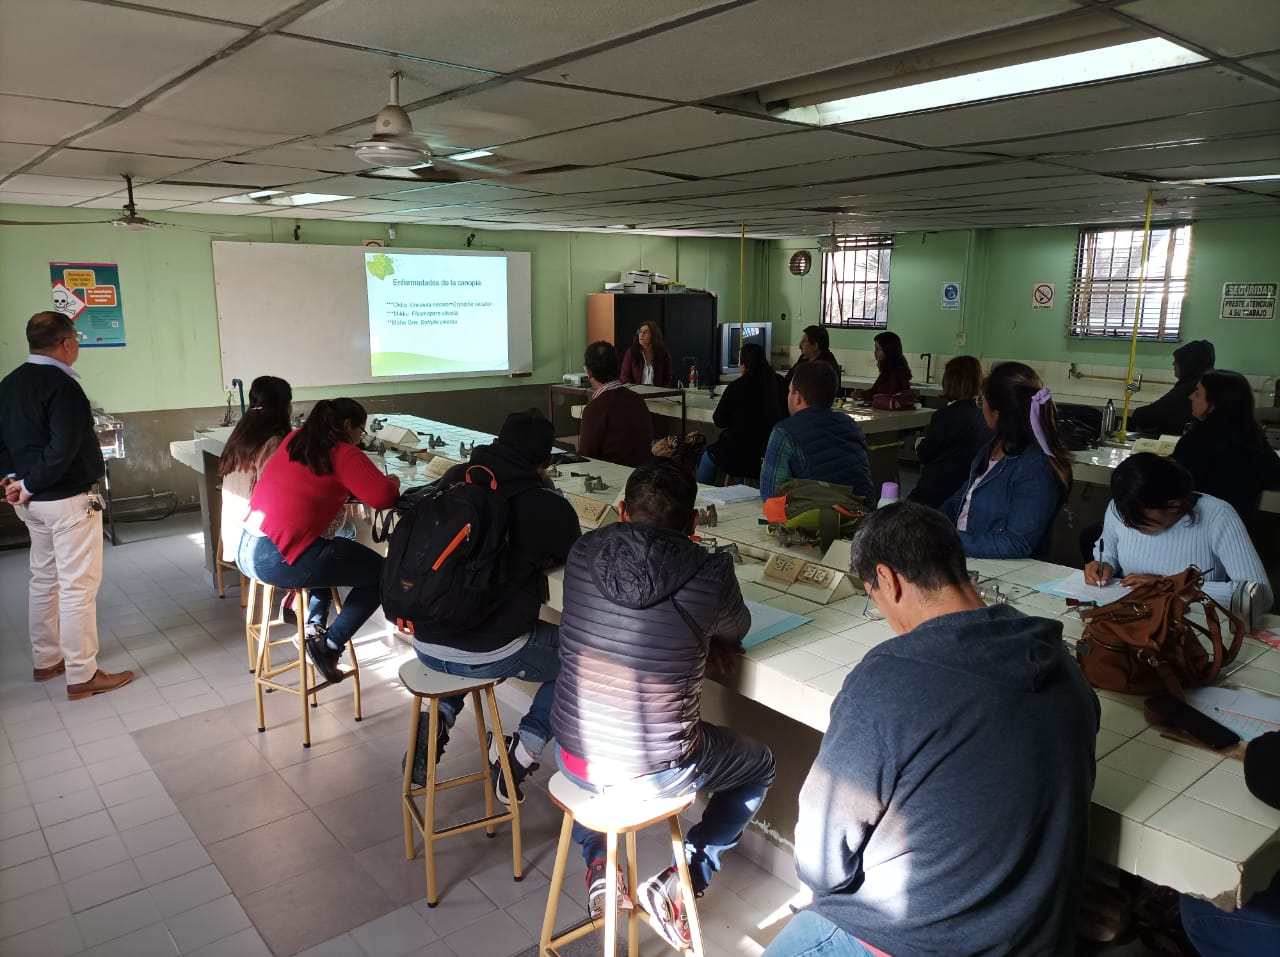 Continúan brindando Curso sobre Vitivinicultura y Enología en Jujuy